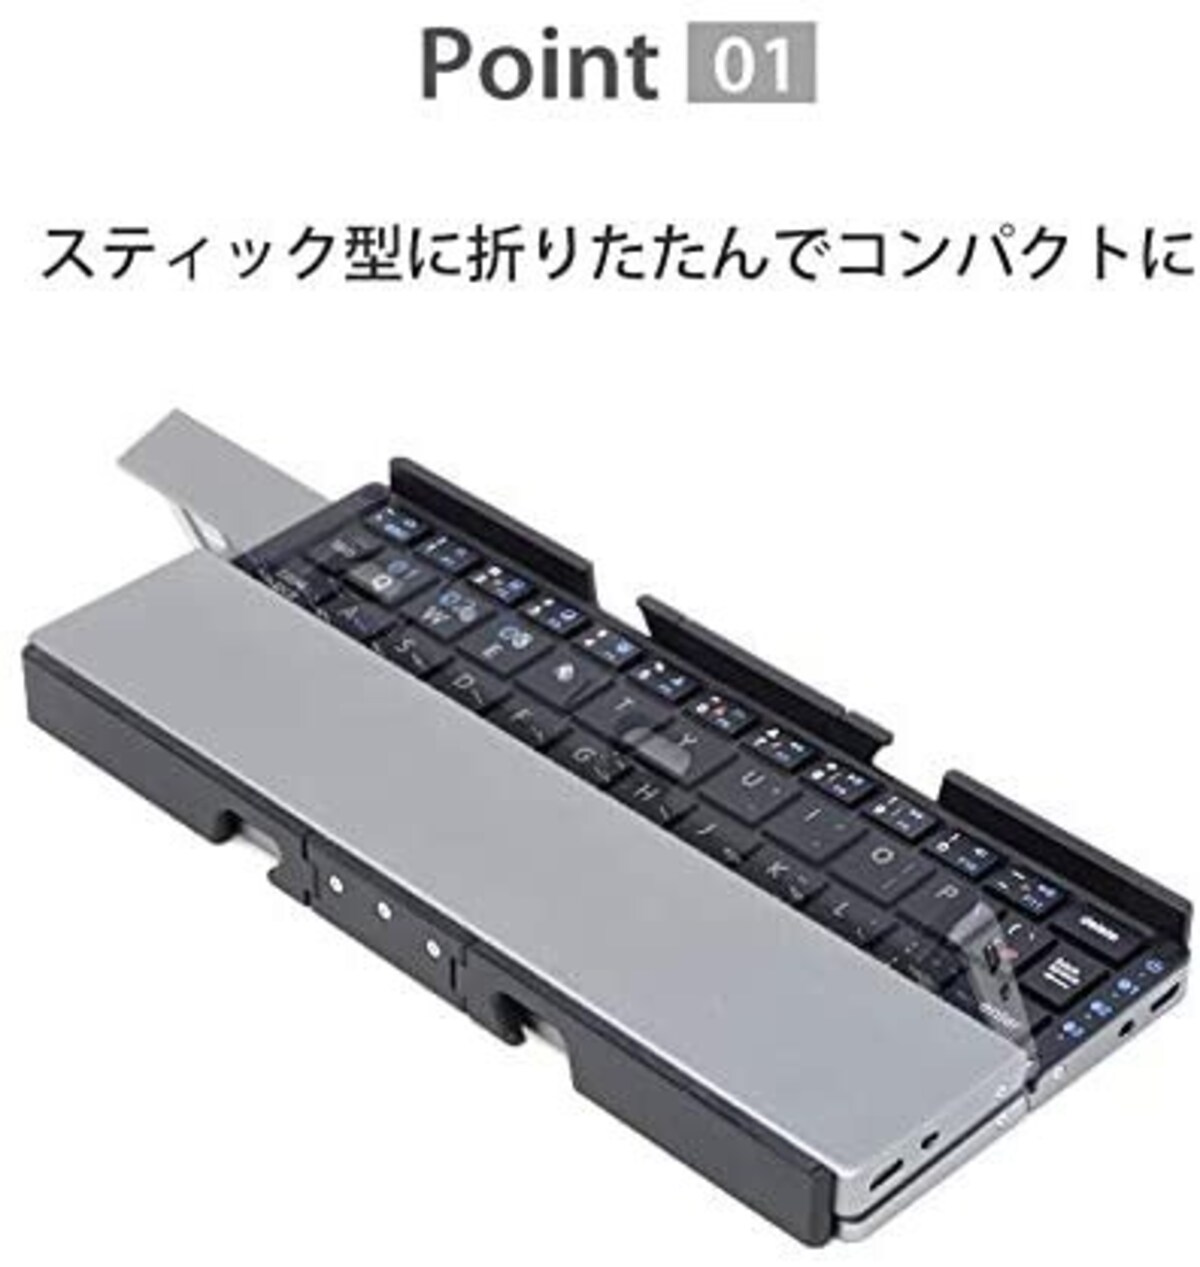  縦折りキーボード Plier画像2 